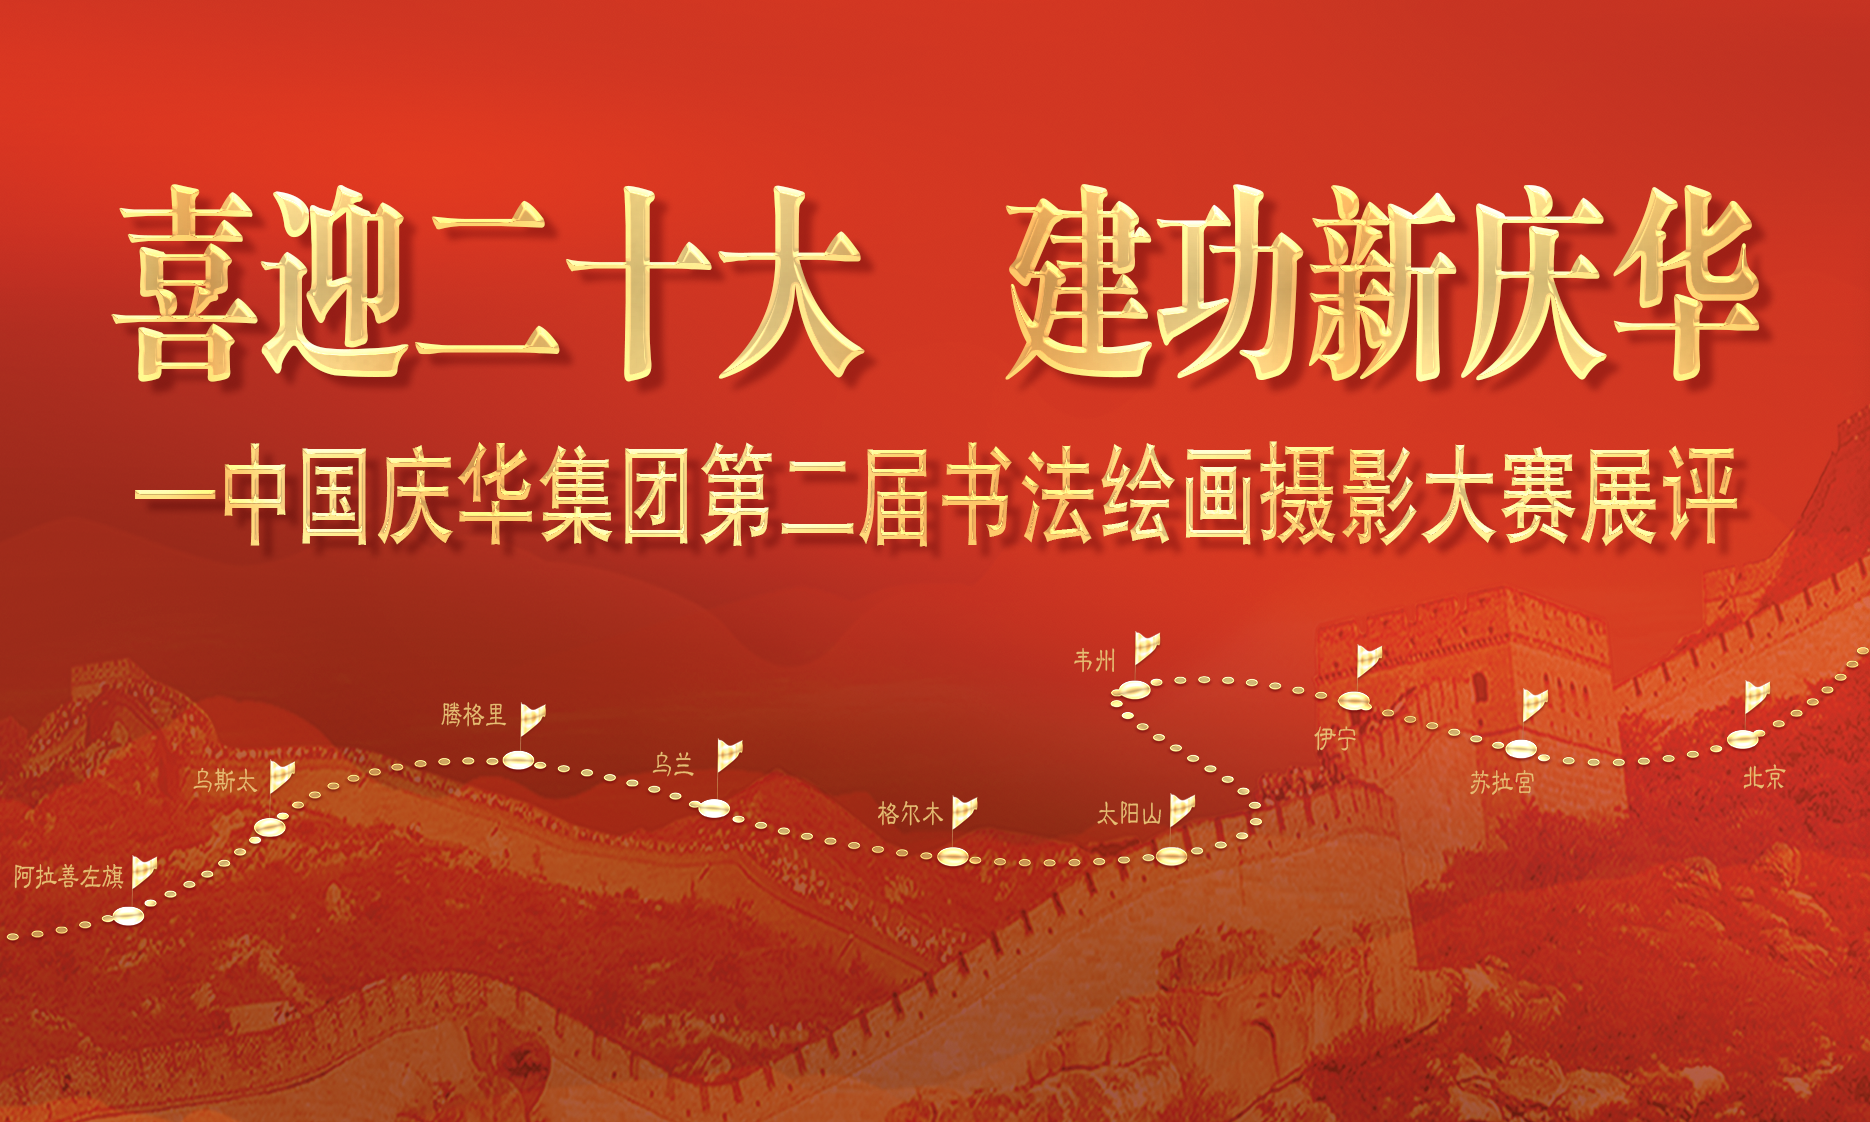 中國慶華能源集團“喜迎二十大 建功新慶華”書法、繪畫、攝影展